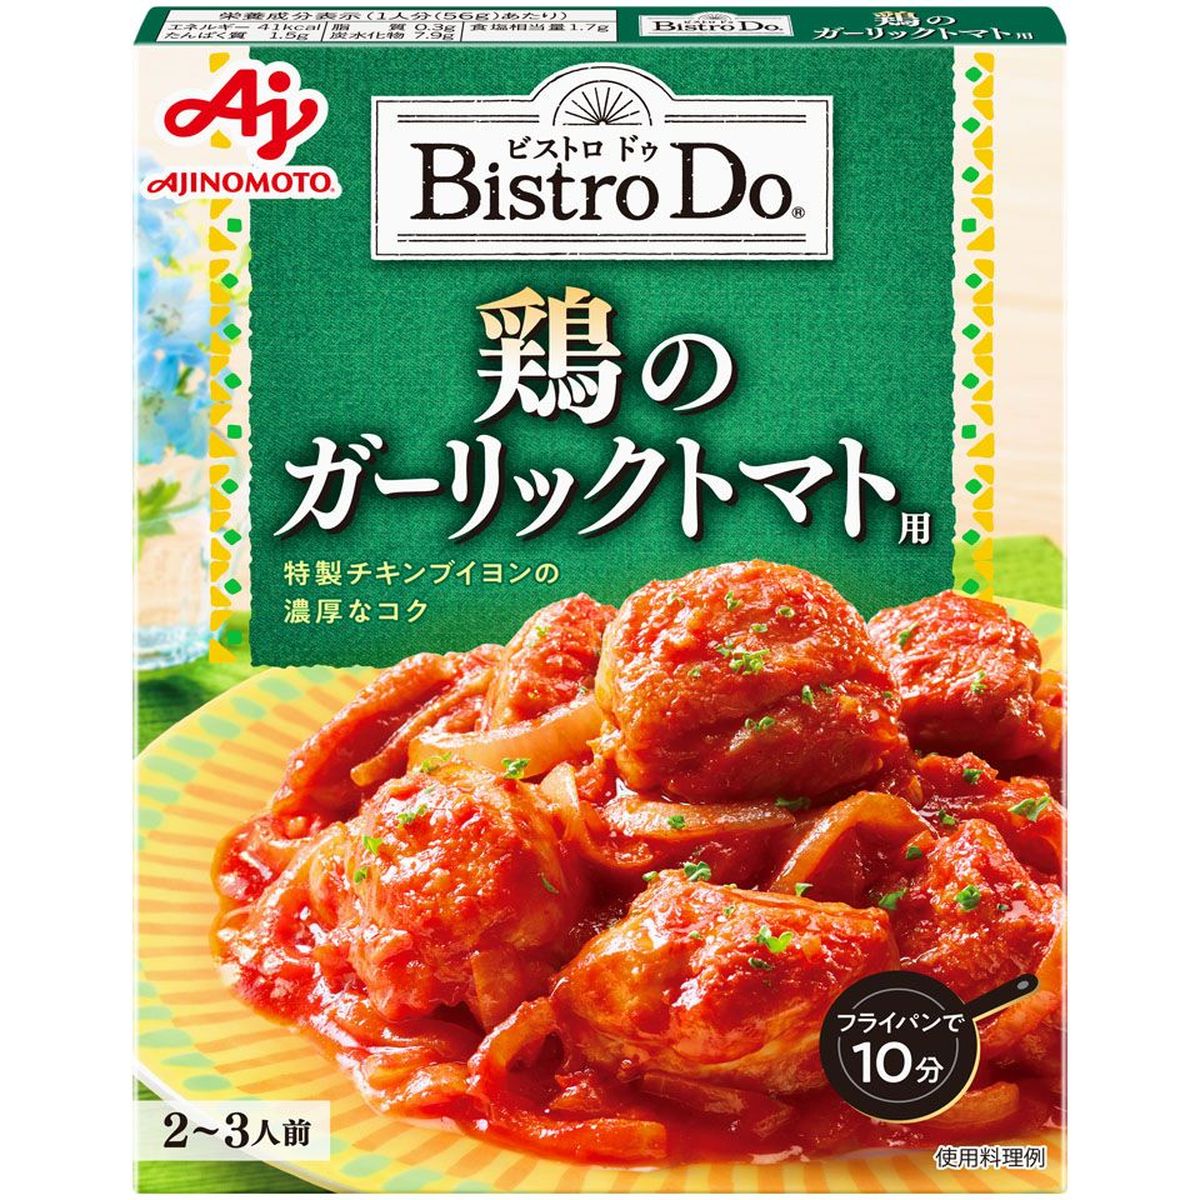 【10個入リ】味ノ素 ビストロD鶏ノガーリックトマト用 140g